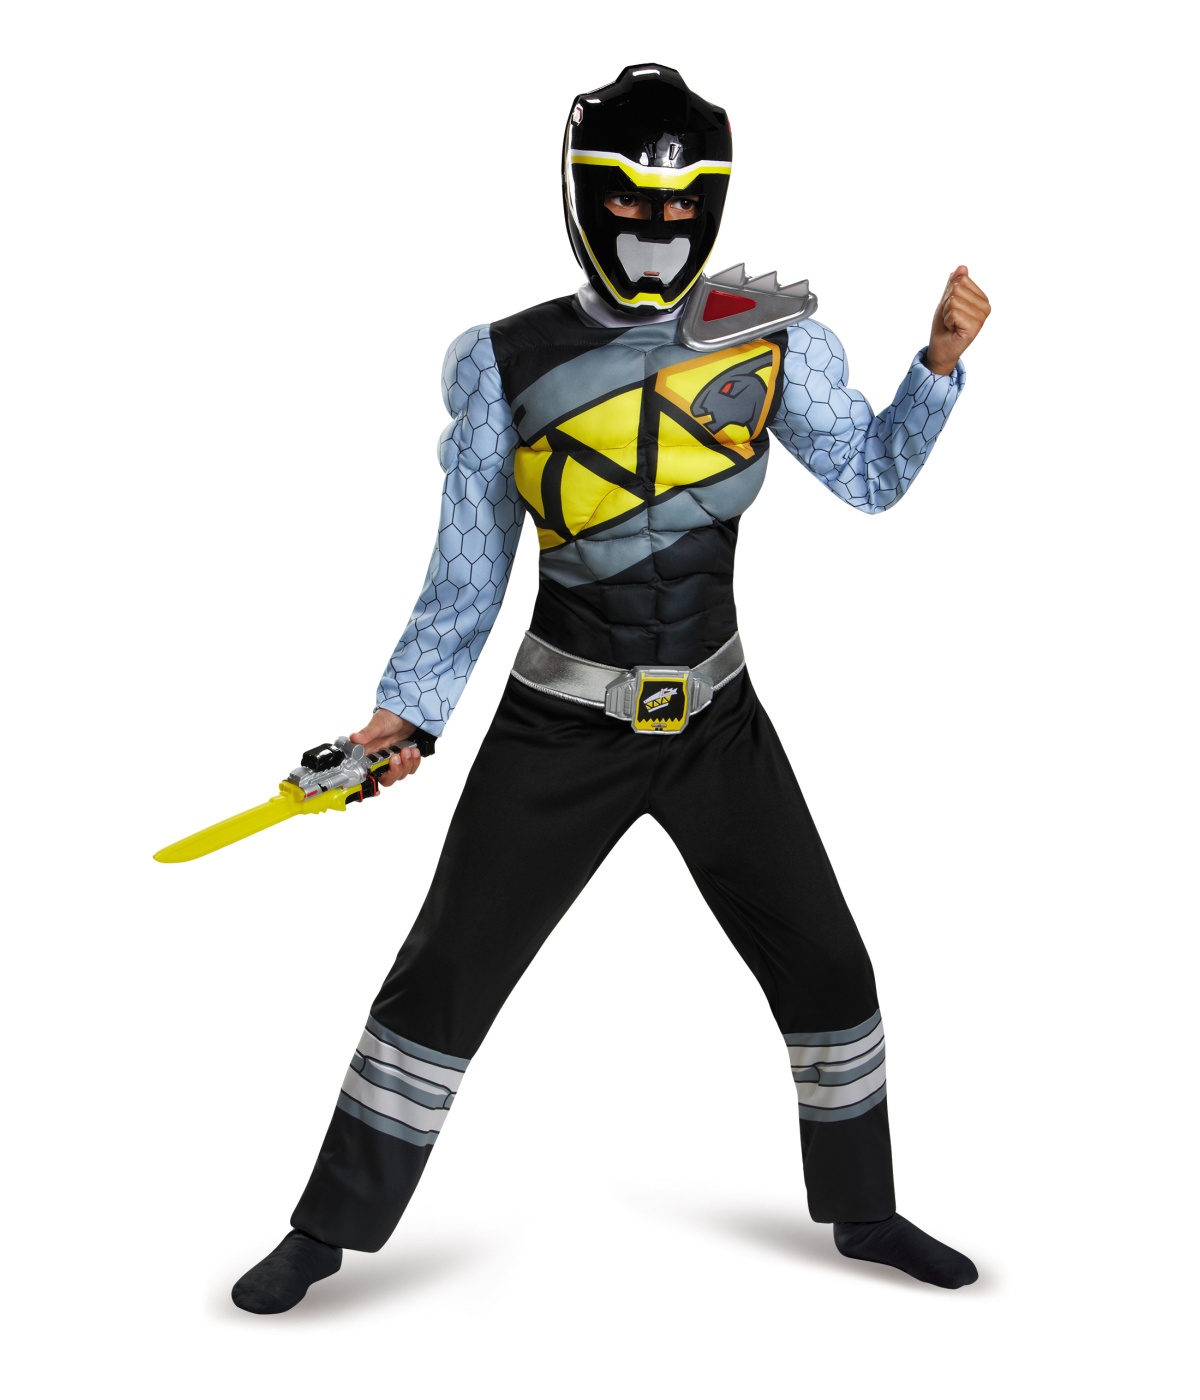  Boys Black Power Ranger Costume